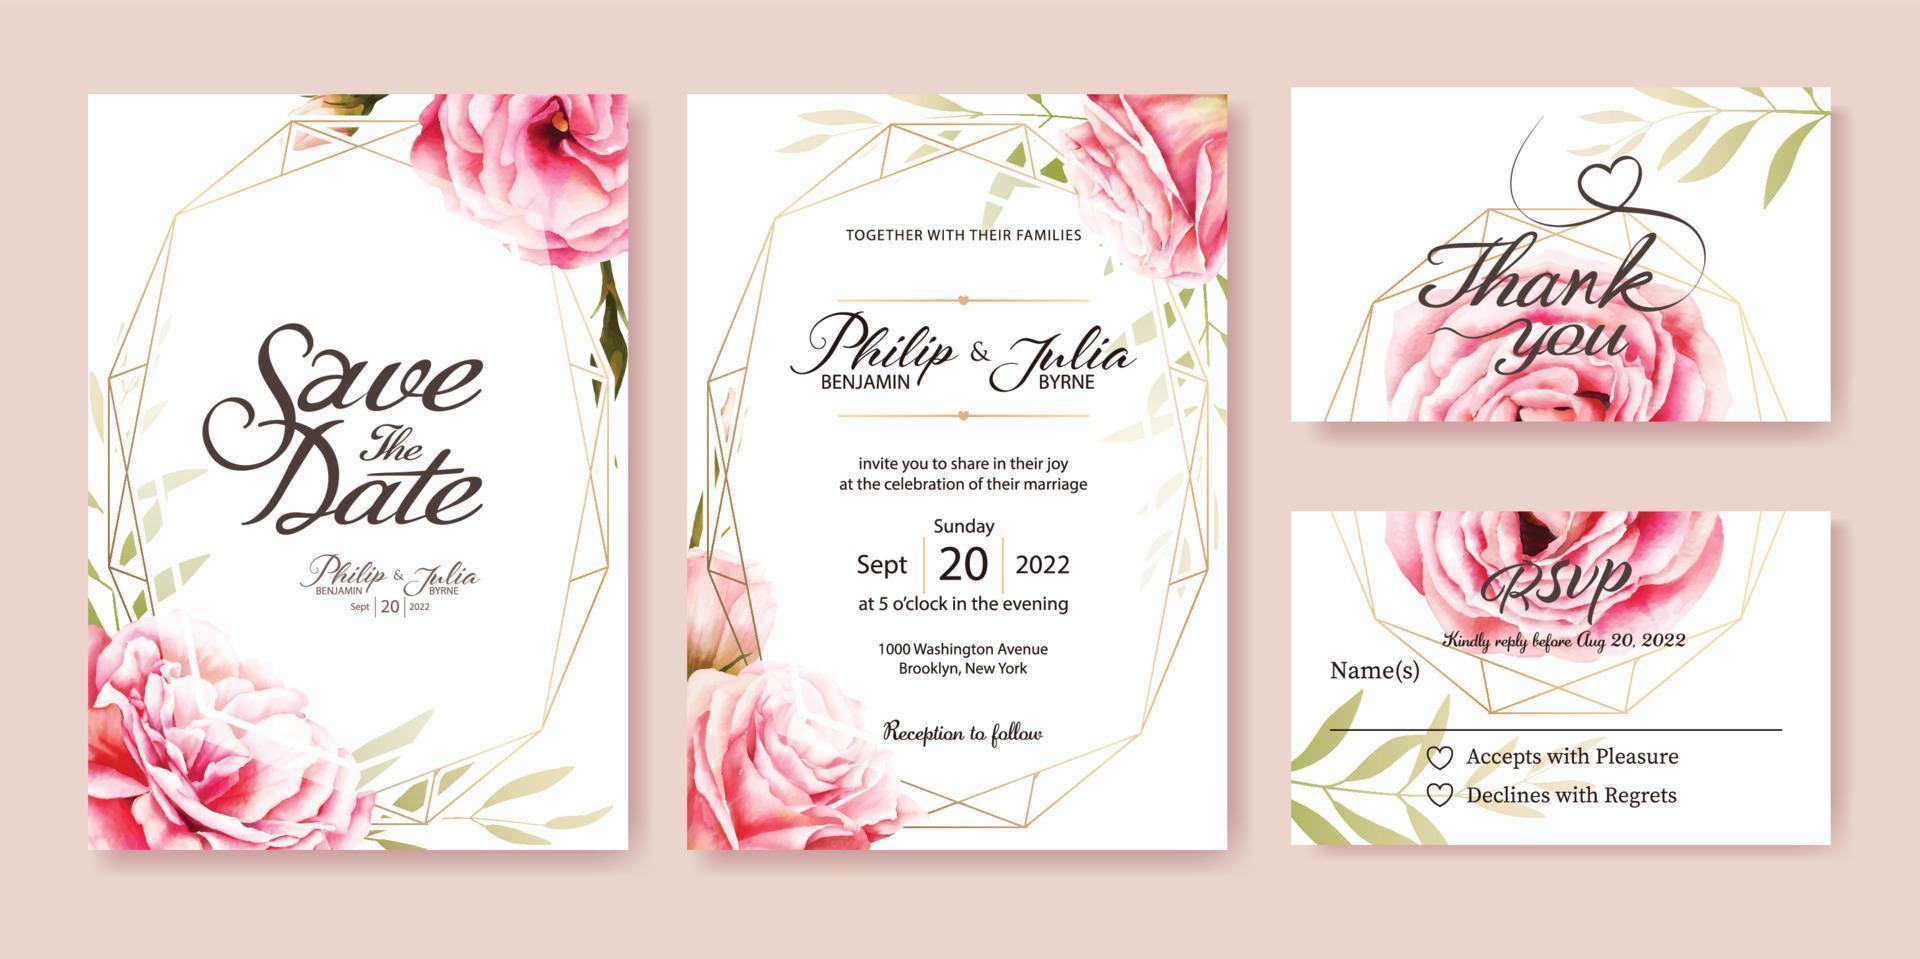 invitación de boda, guardar la fecha, gracias, plantilla de diseño de tarjeta rsvp. vector. rosa rosa, hojas de olivo. estilo acuarela vector